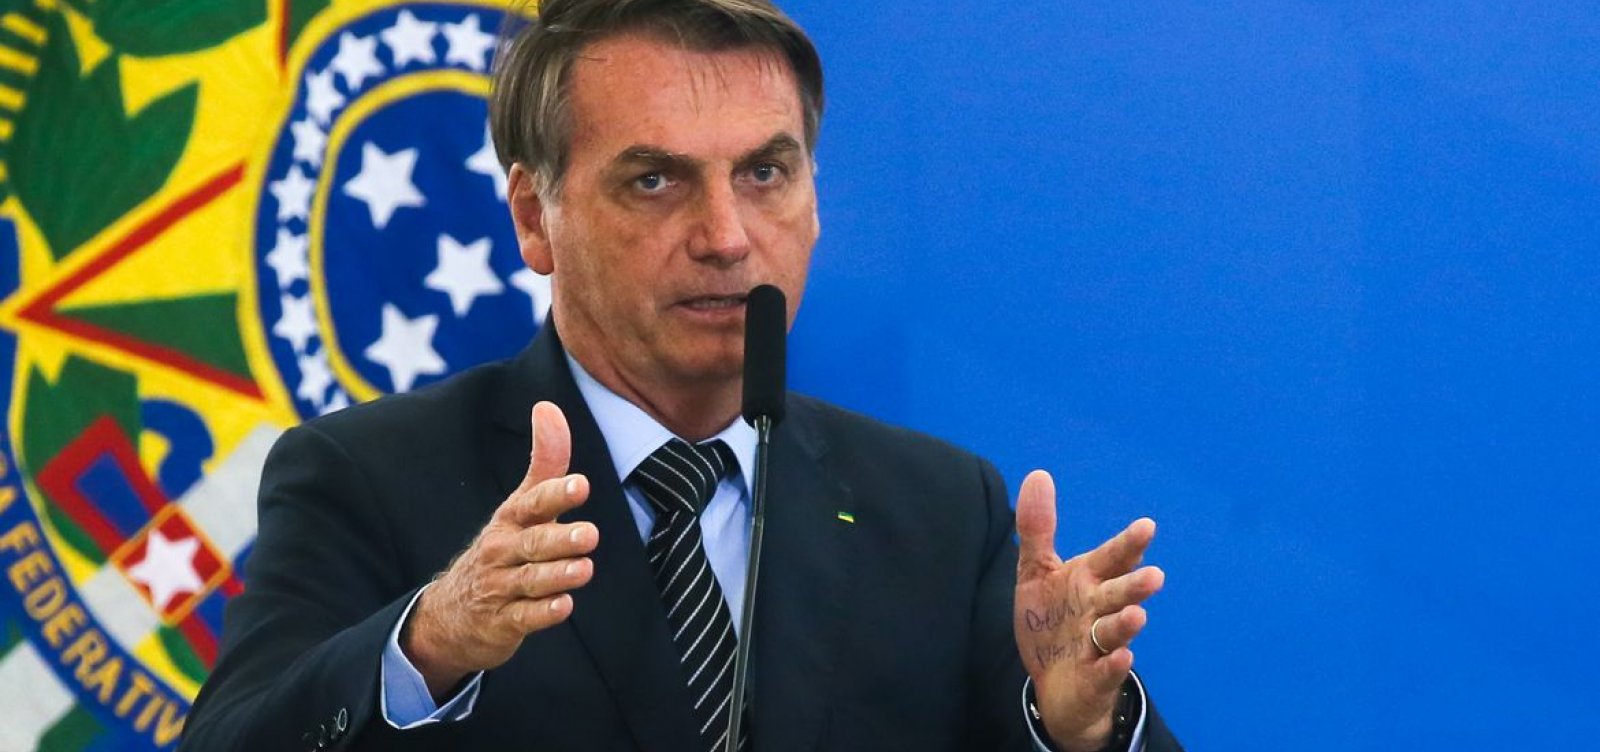 Itamaraty confirma participação de Bolsonaro na Cúpula das Américas